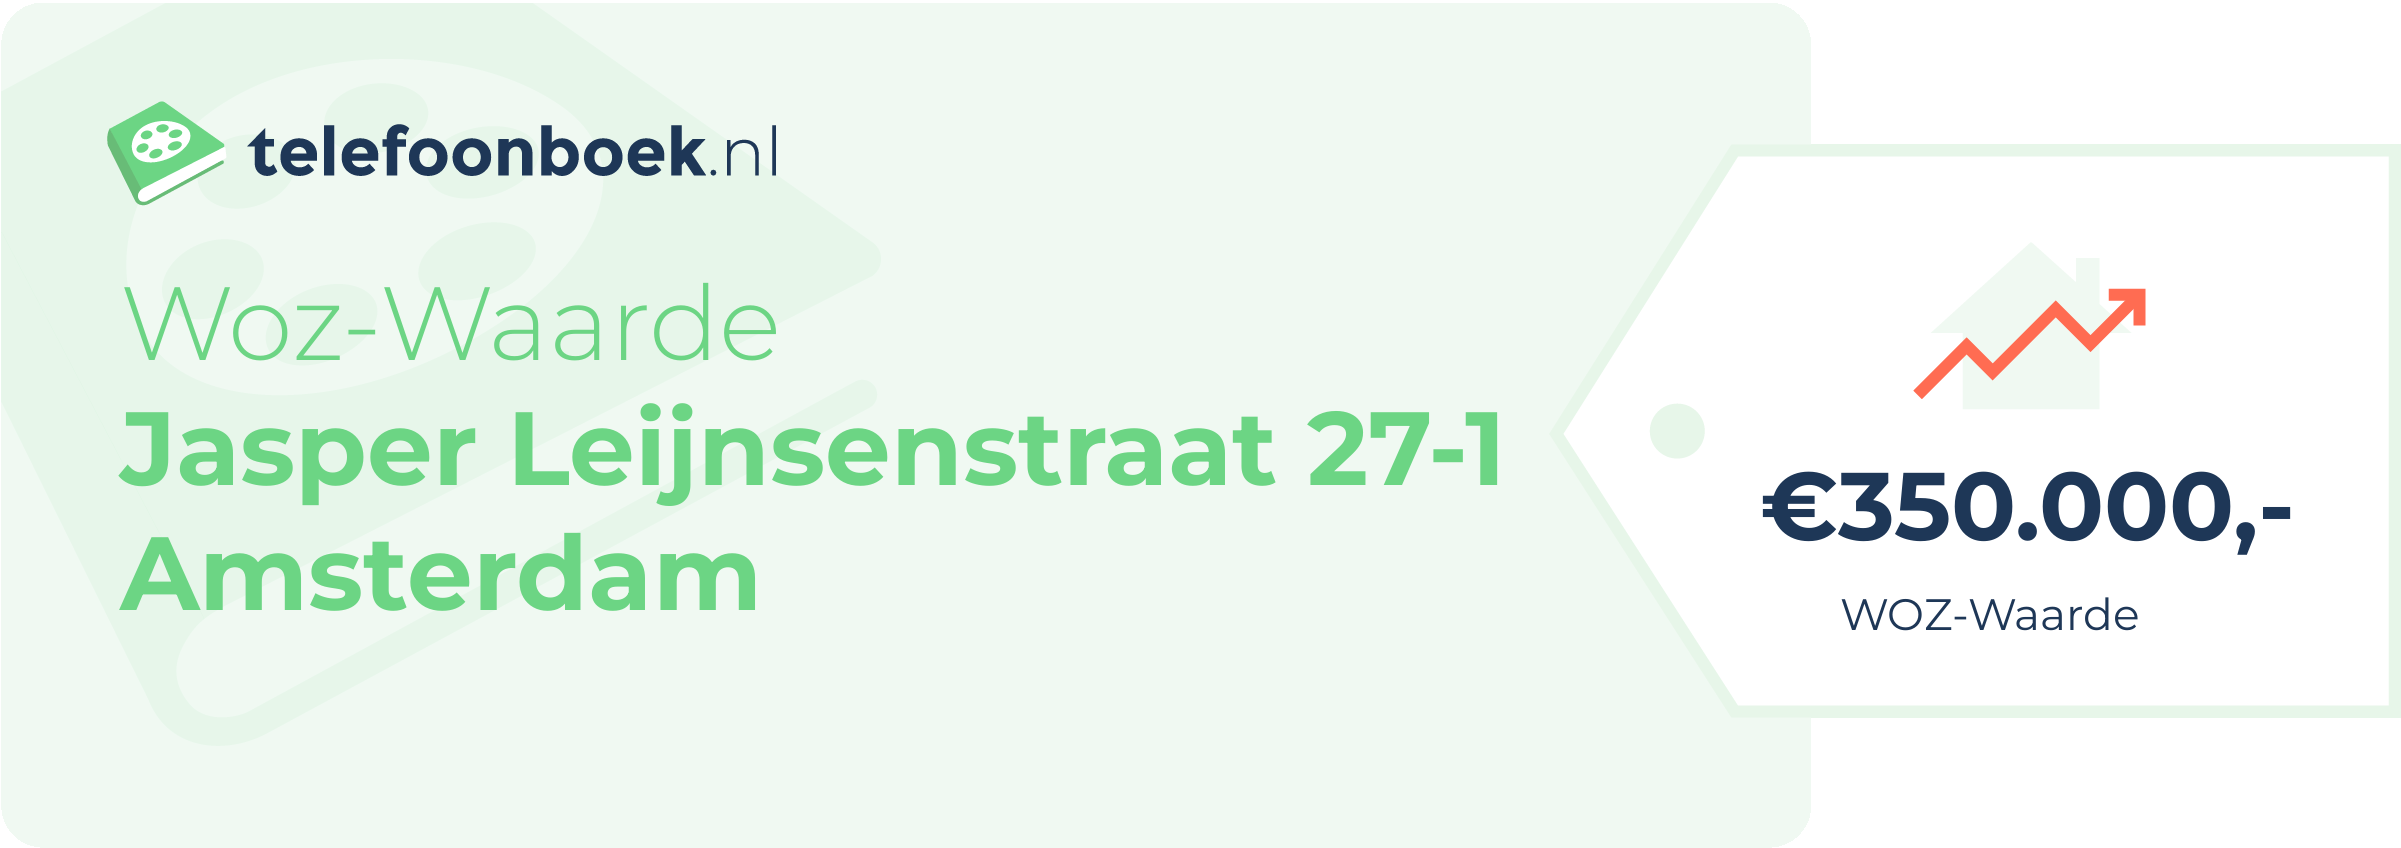 WOZ-waarde Jasper Leijnsenstraat 27-1 Amsterdam